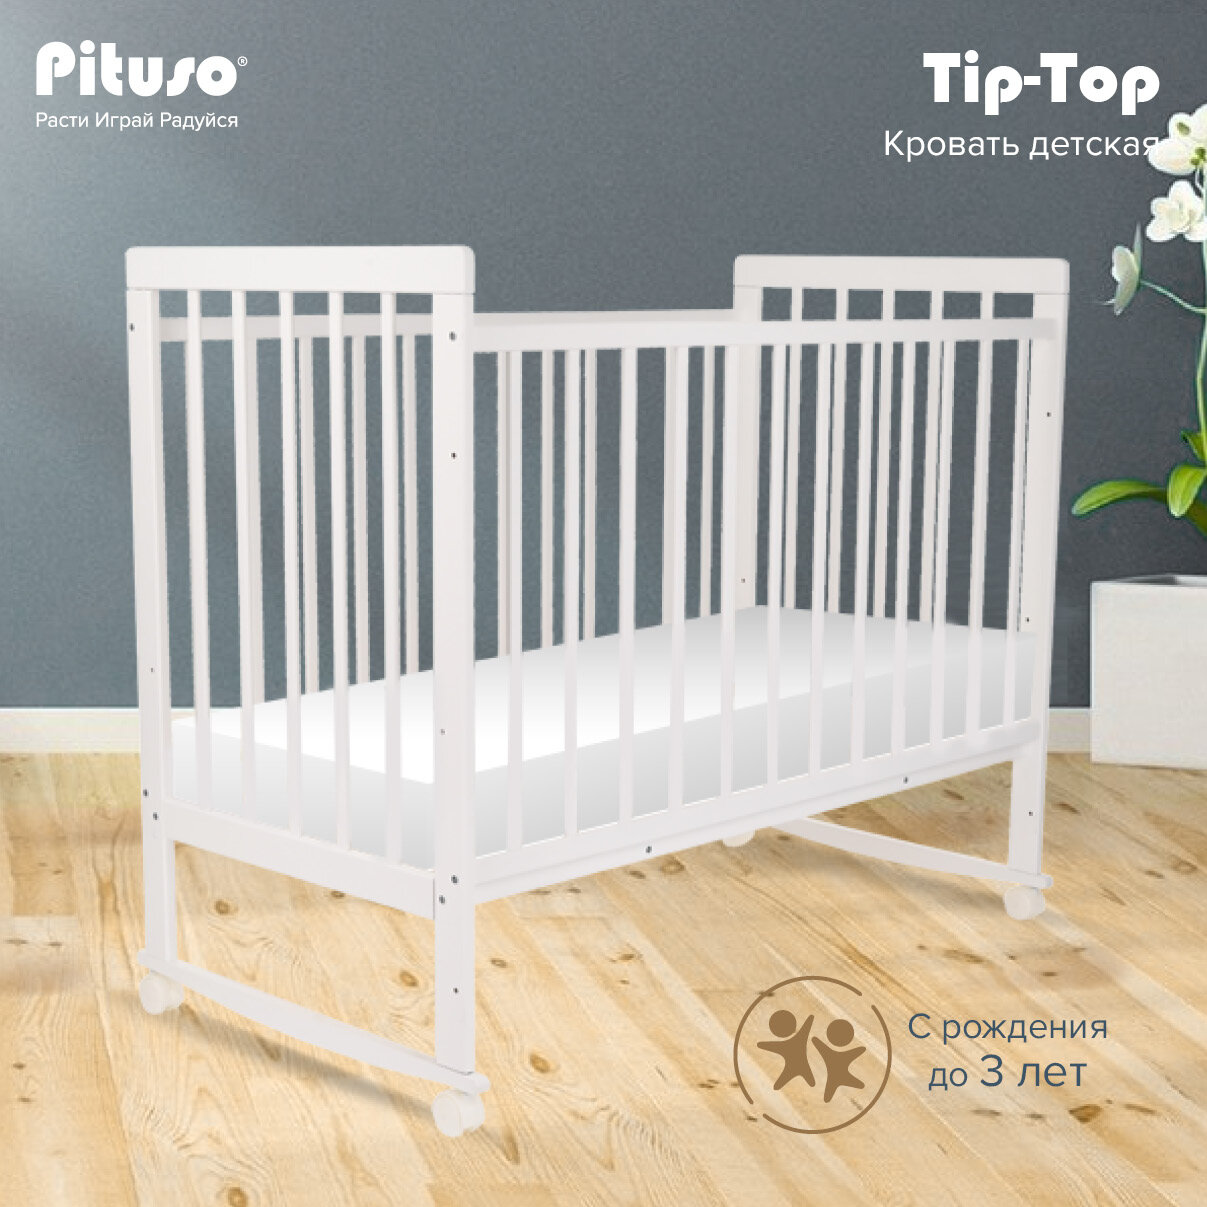 Кровать детская Pituso Tip Top, 60x120 см, белый